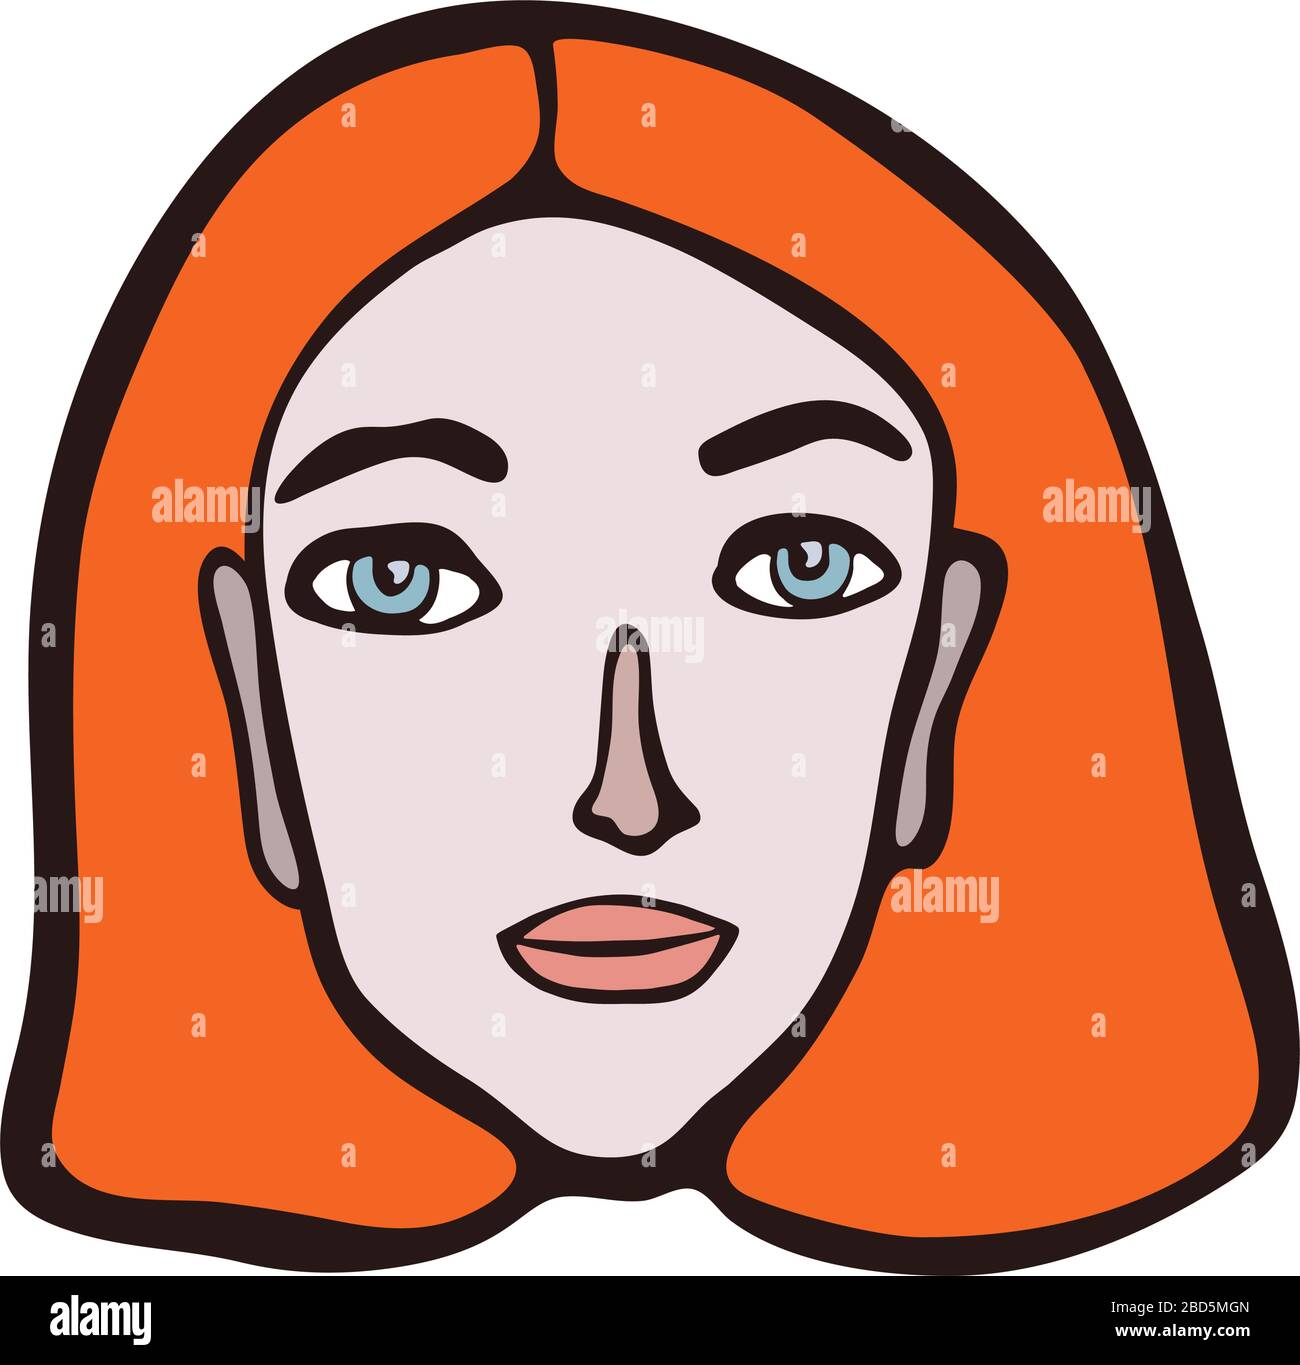 Ritratto femminile lineare minimalista. Ragazza dai capelli rossi, faccia rosa con occhi chiari. Caratteristiche facciali irlandesi o inglesi. Grafica primitiva scandinava Illustrazione Vettoriale